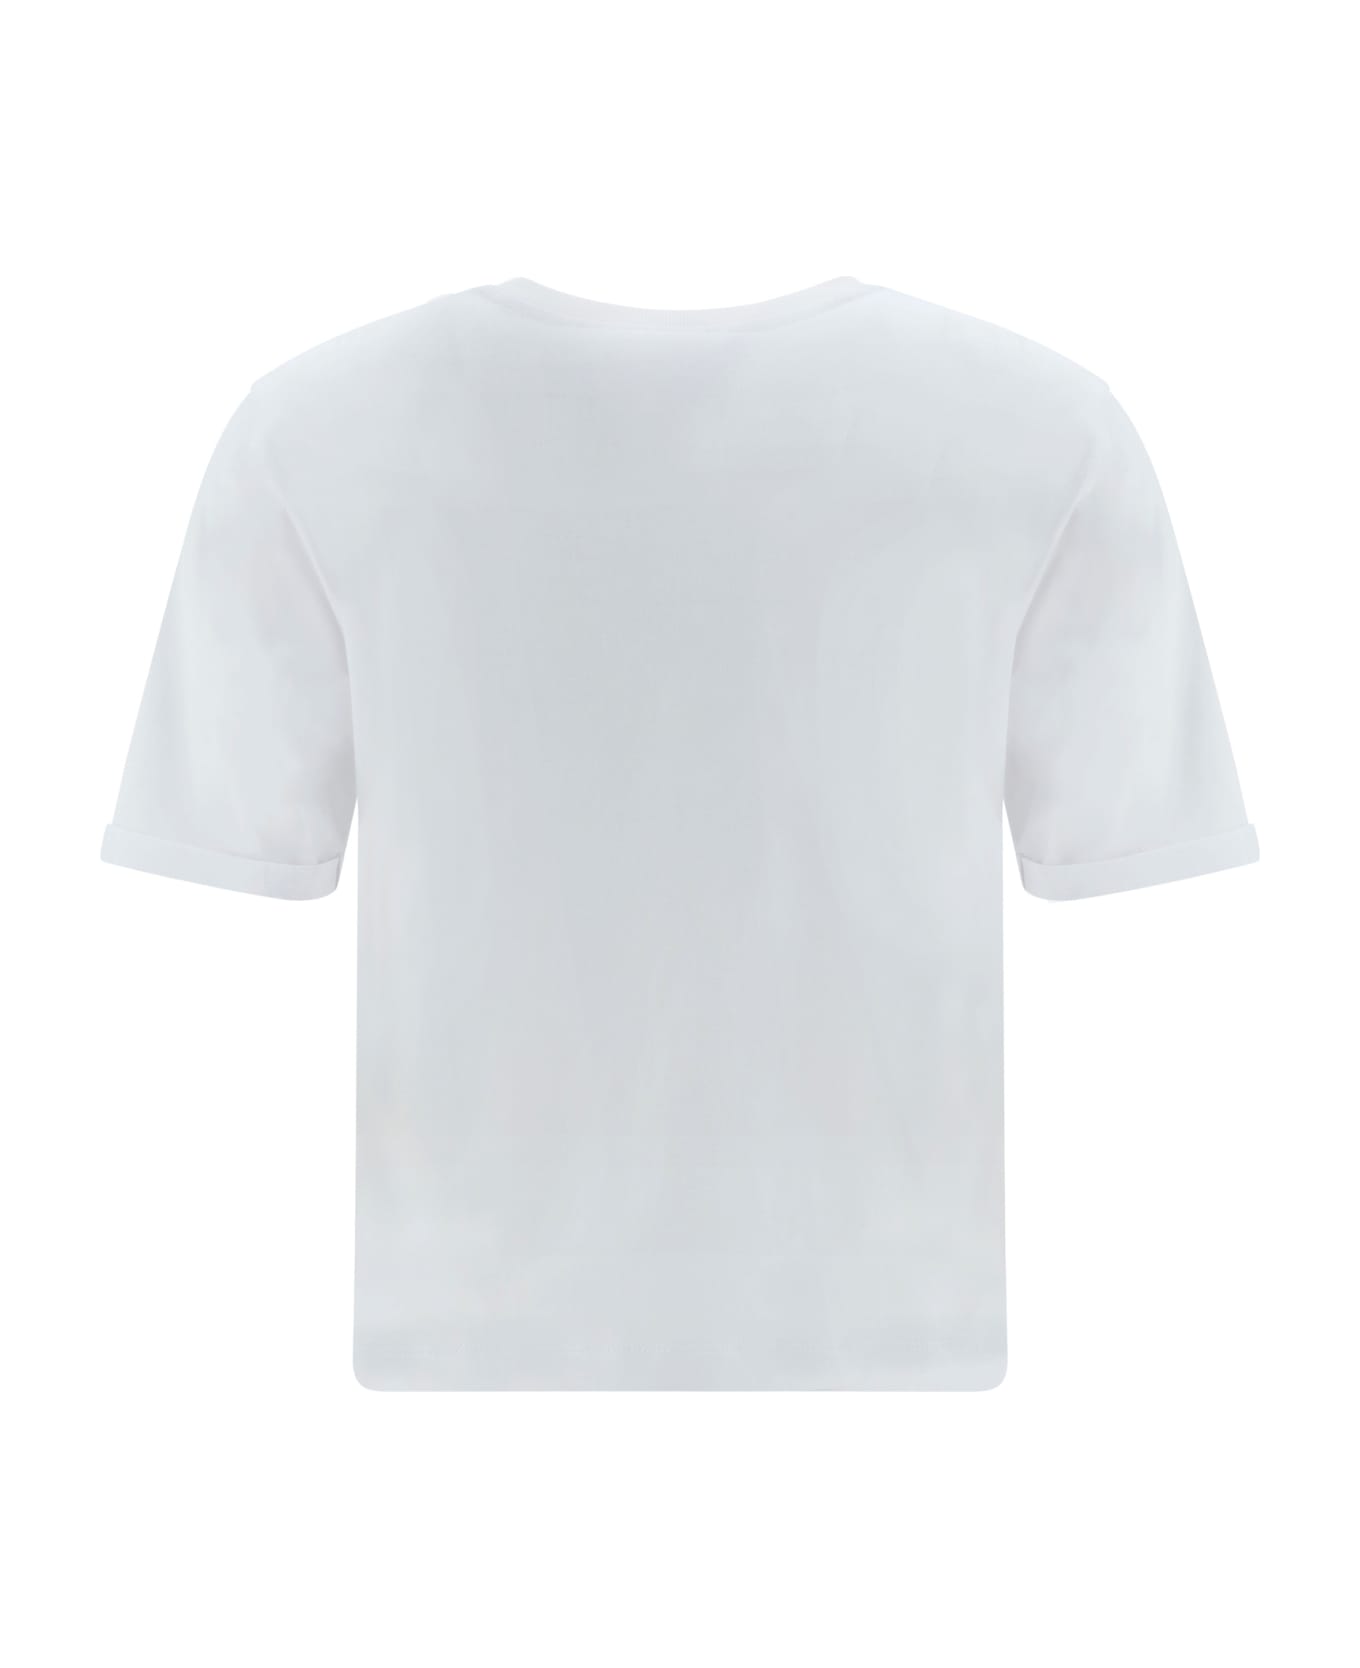 Fendi Logo Embroidered Crewneck T-shirt - White Tシャツ